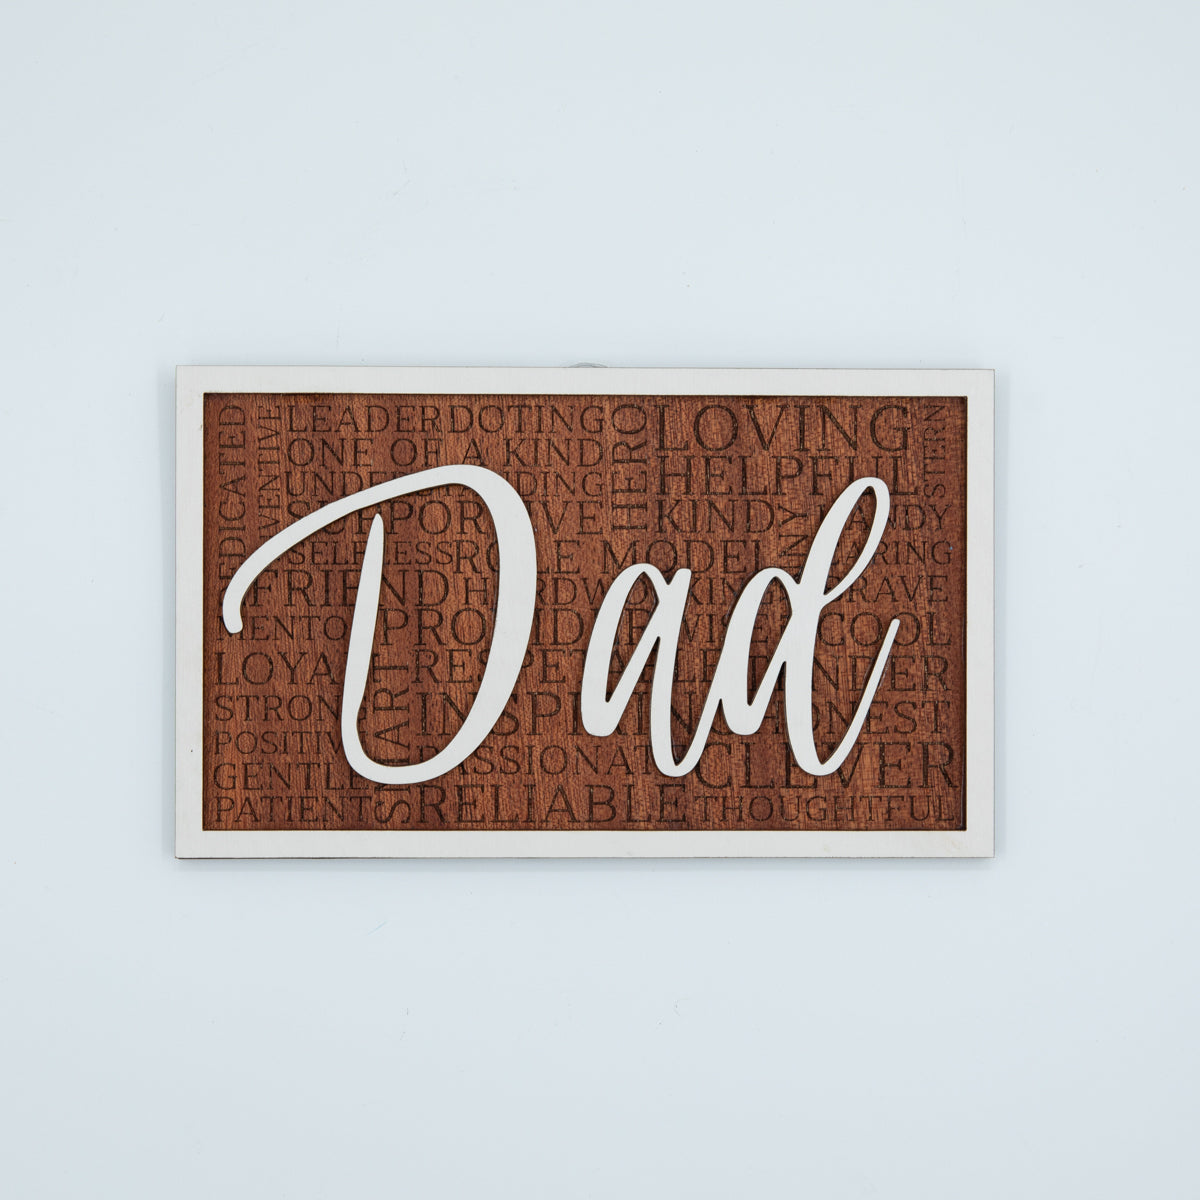 Dad Sign